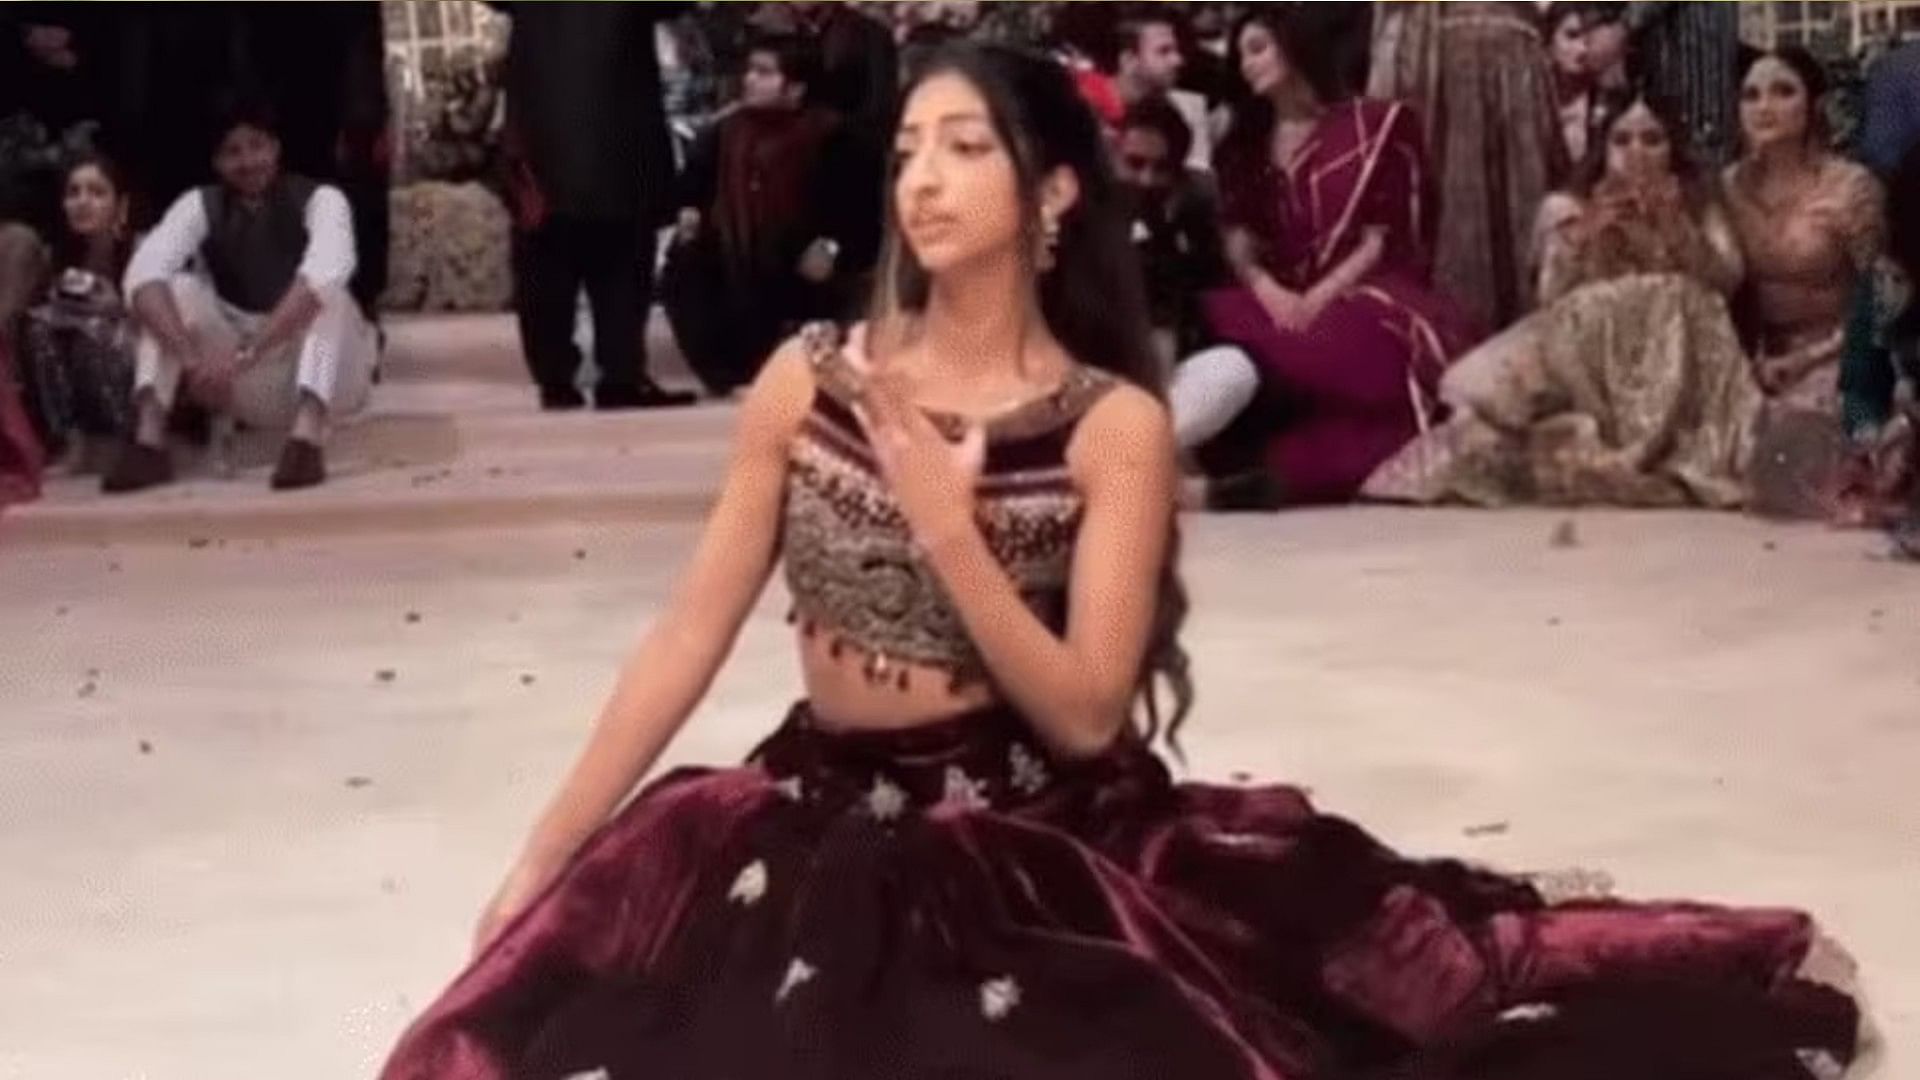 Pakistani girl dance video on Ang Laga De song going Viral social media